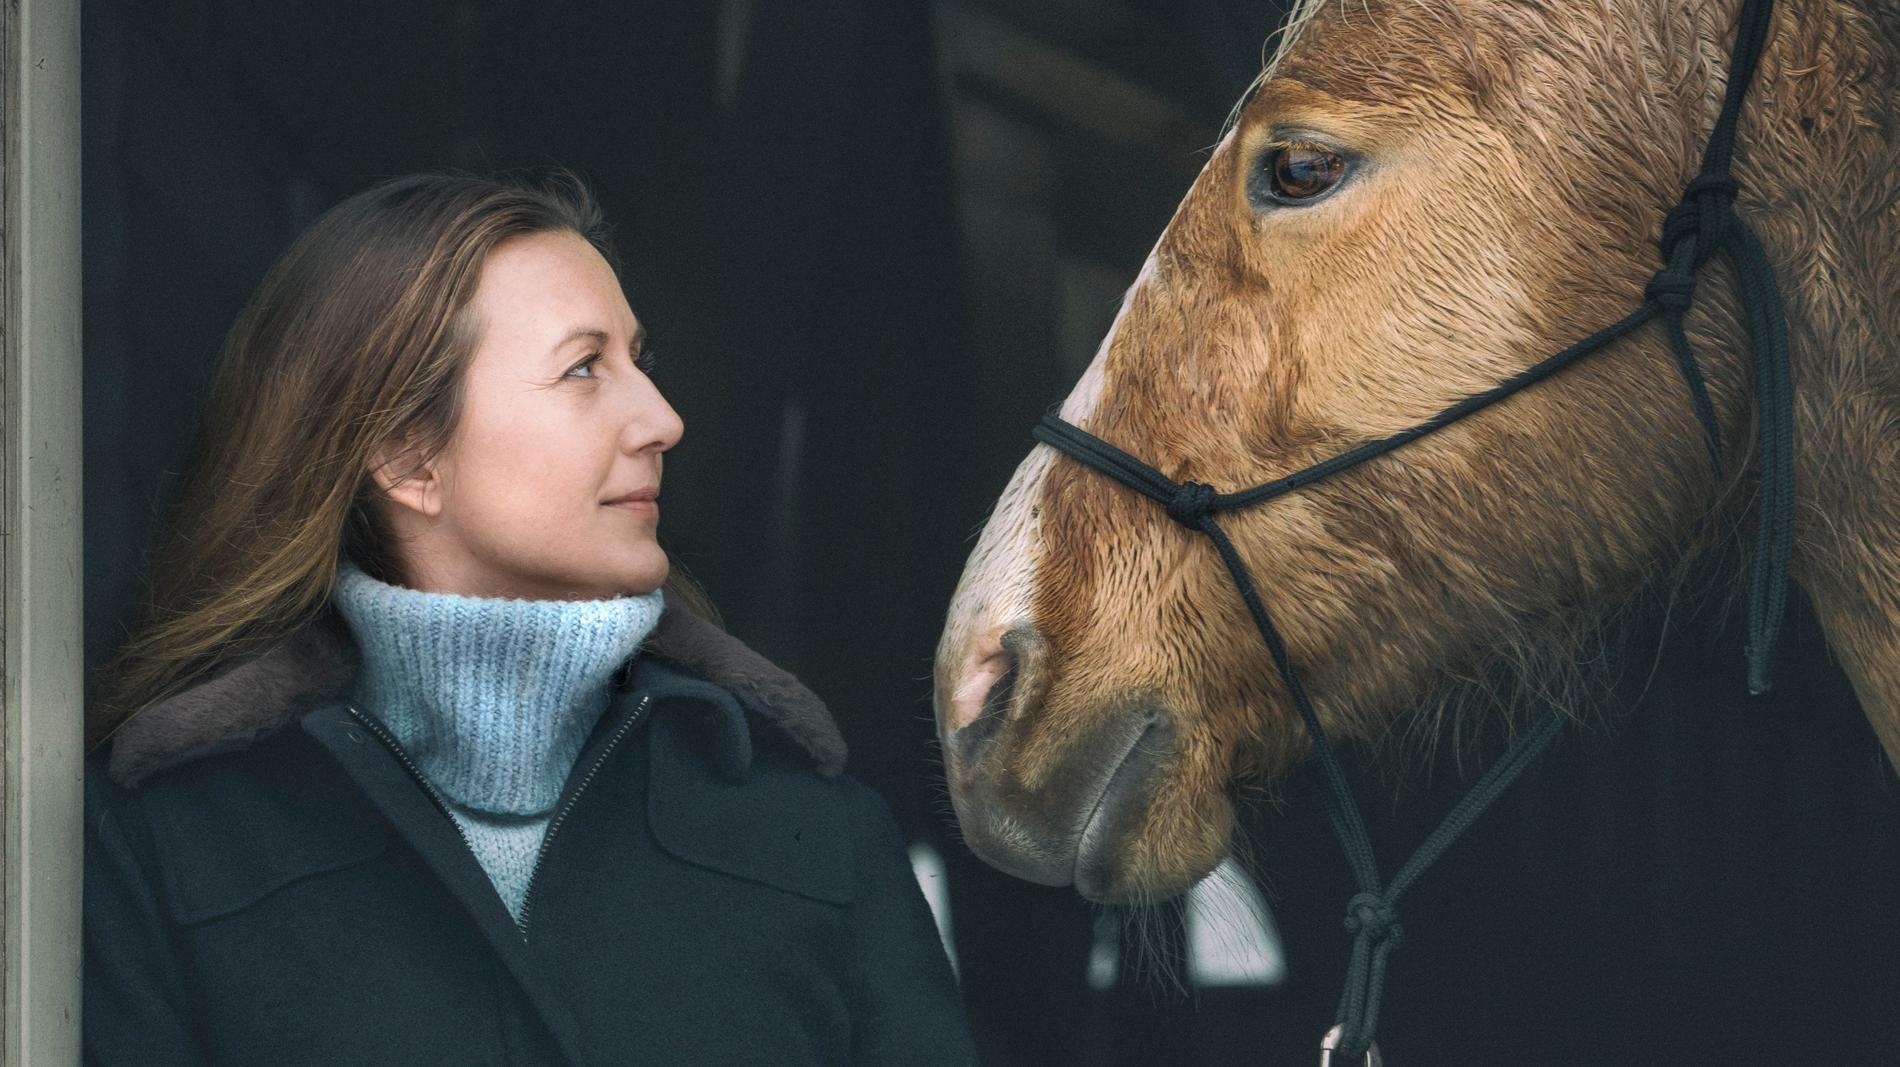 "Jag tror att de allra flesta skulle må bra av att vistas kring hästar i högre utsträckning", säger Sanna Lundell som är aktuell med den nya programserien "Flocken" i SVT. Pressbild.